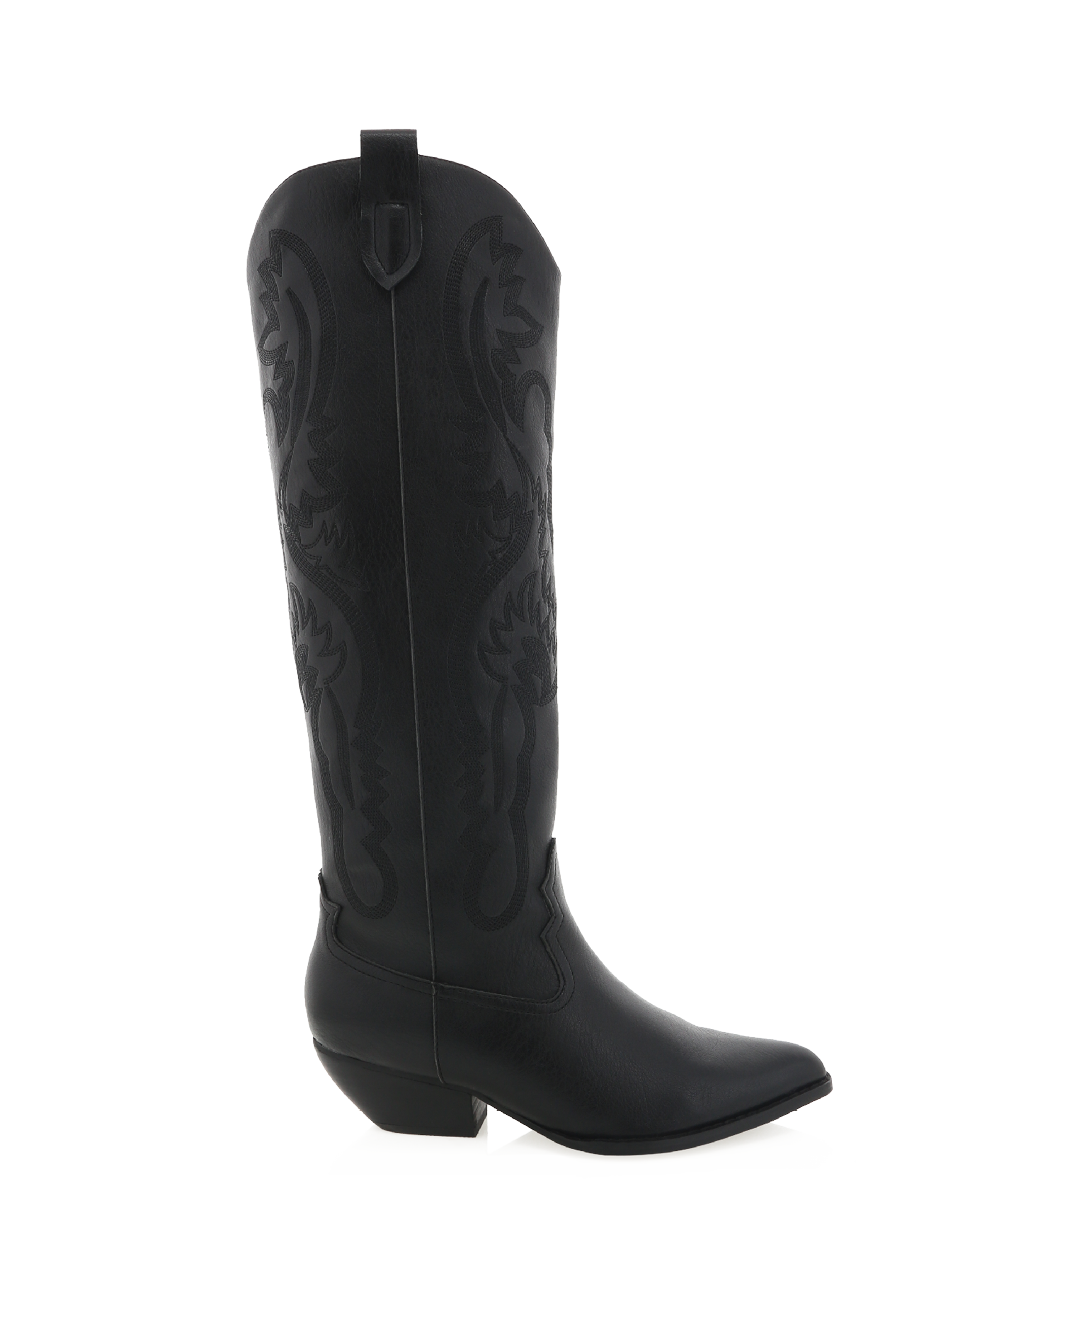 WILDEN - BLACK-Boots-Billini-Billini